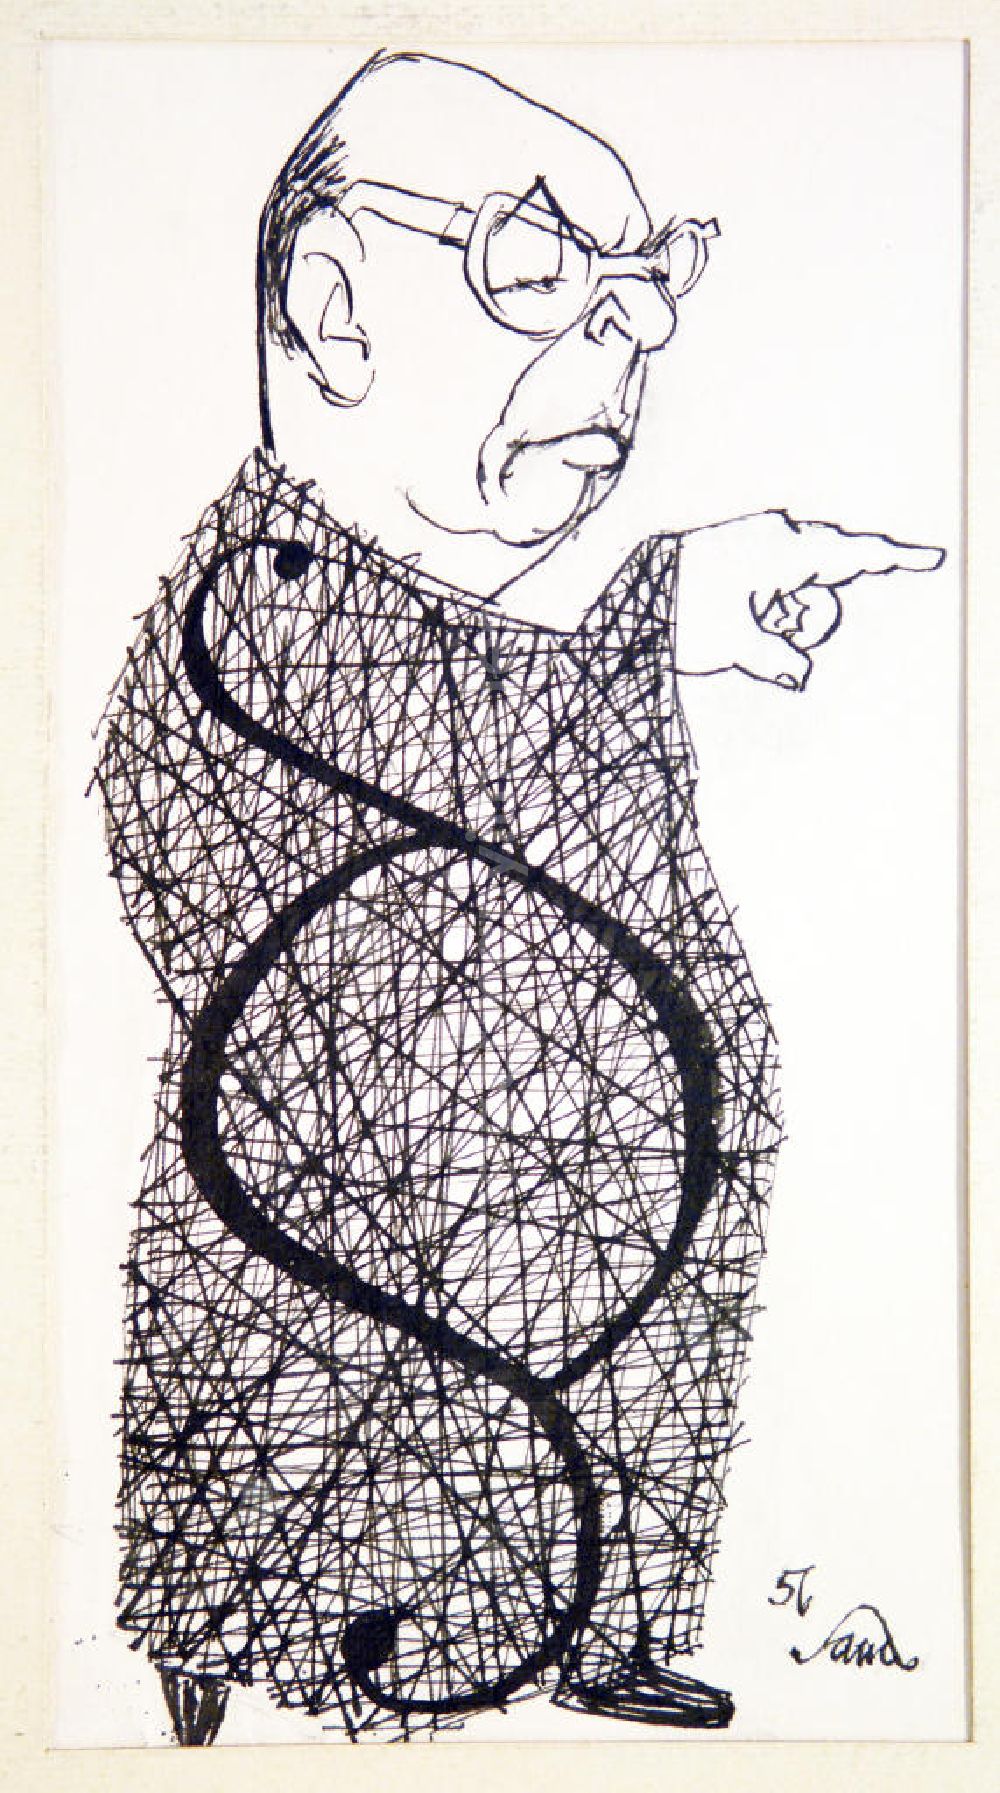 Berlin: Zeichnung von Herbert Sandberg Dr. Kaul, Rechtsanwalt aus dem Jahr 1956, 15,8x29,5cm Feder in schwarz, handsigniert. Dr. Kaul in Robe, auf der Robe das Paragraphenzeichen, er zeigt mit seinem linken Zeigefinger nach vorne.